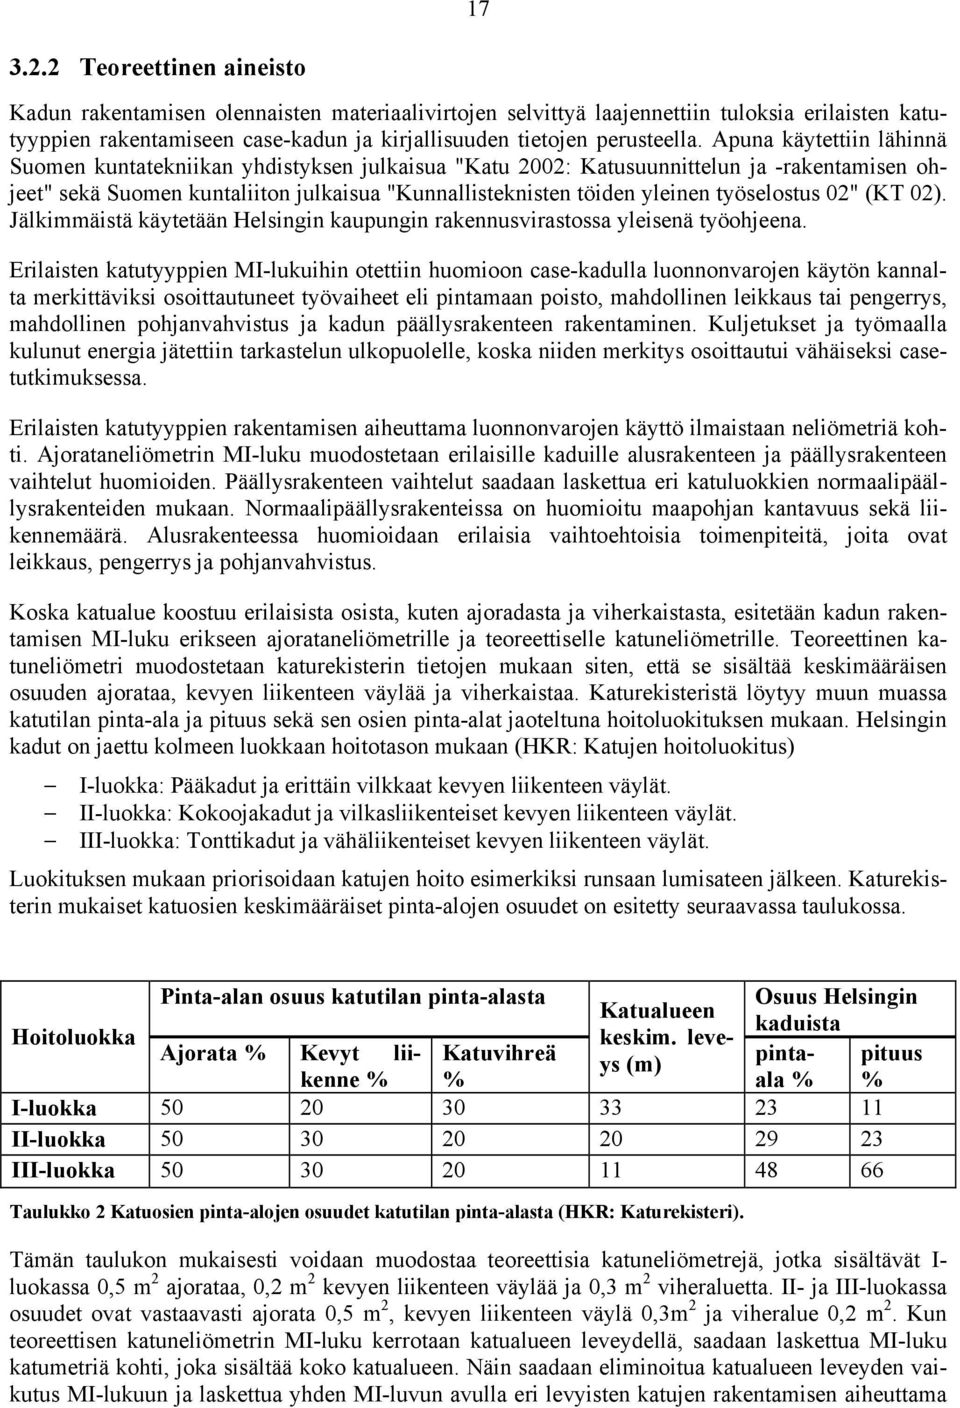 Apuna käytettiin lähinnä Suomen kuntatekniikan yhdistyksen julkaisua "Katu 2002: Katusuunnittelun ja -rakentamisen ohjeet" sekä Suomen kuntaliiton julkaisua "Kunnallisteknisten töiden yleinen